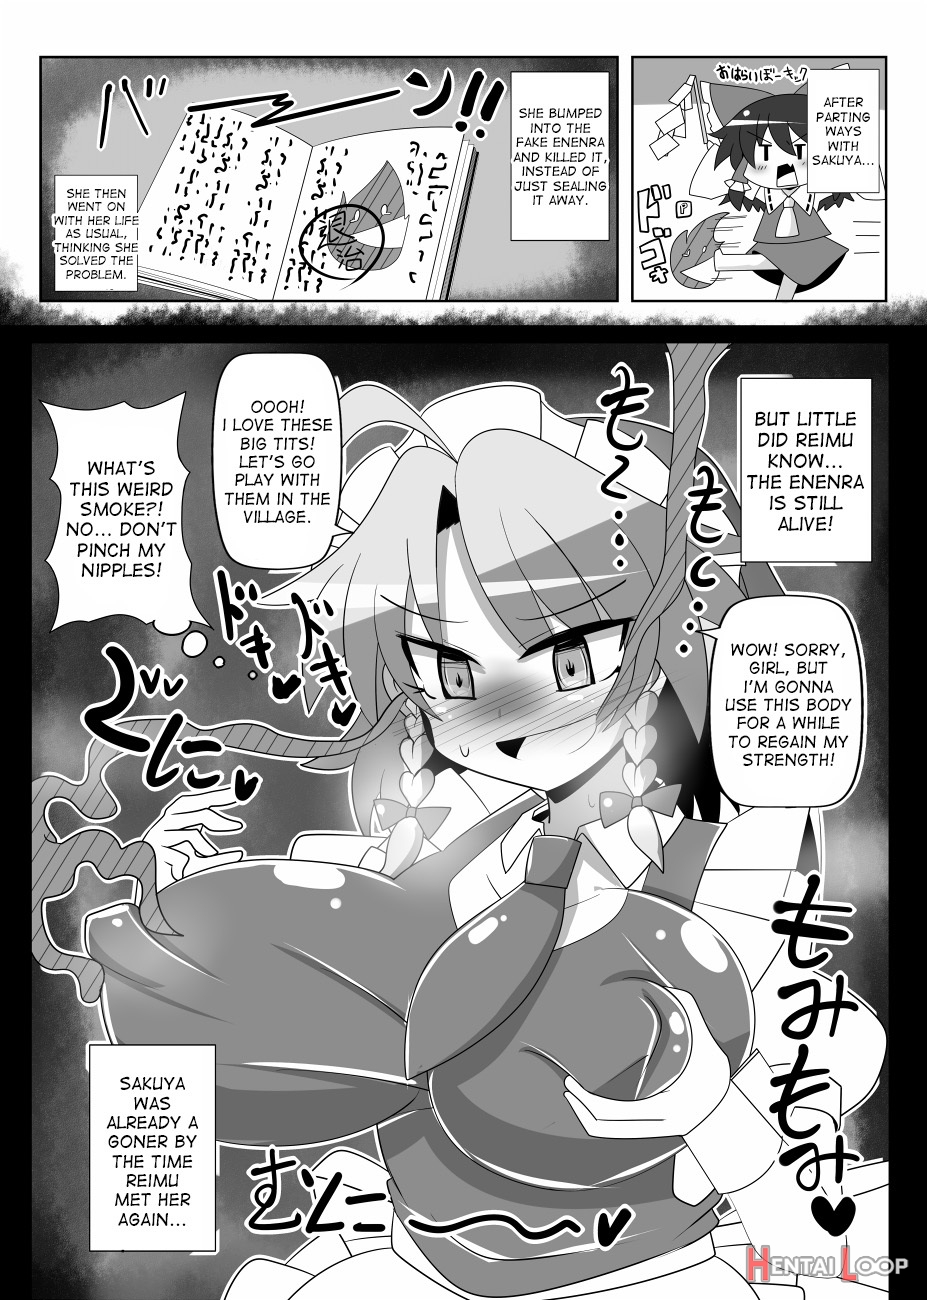 Sakuya Trip page 16